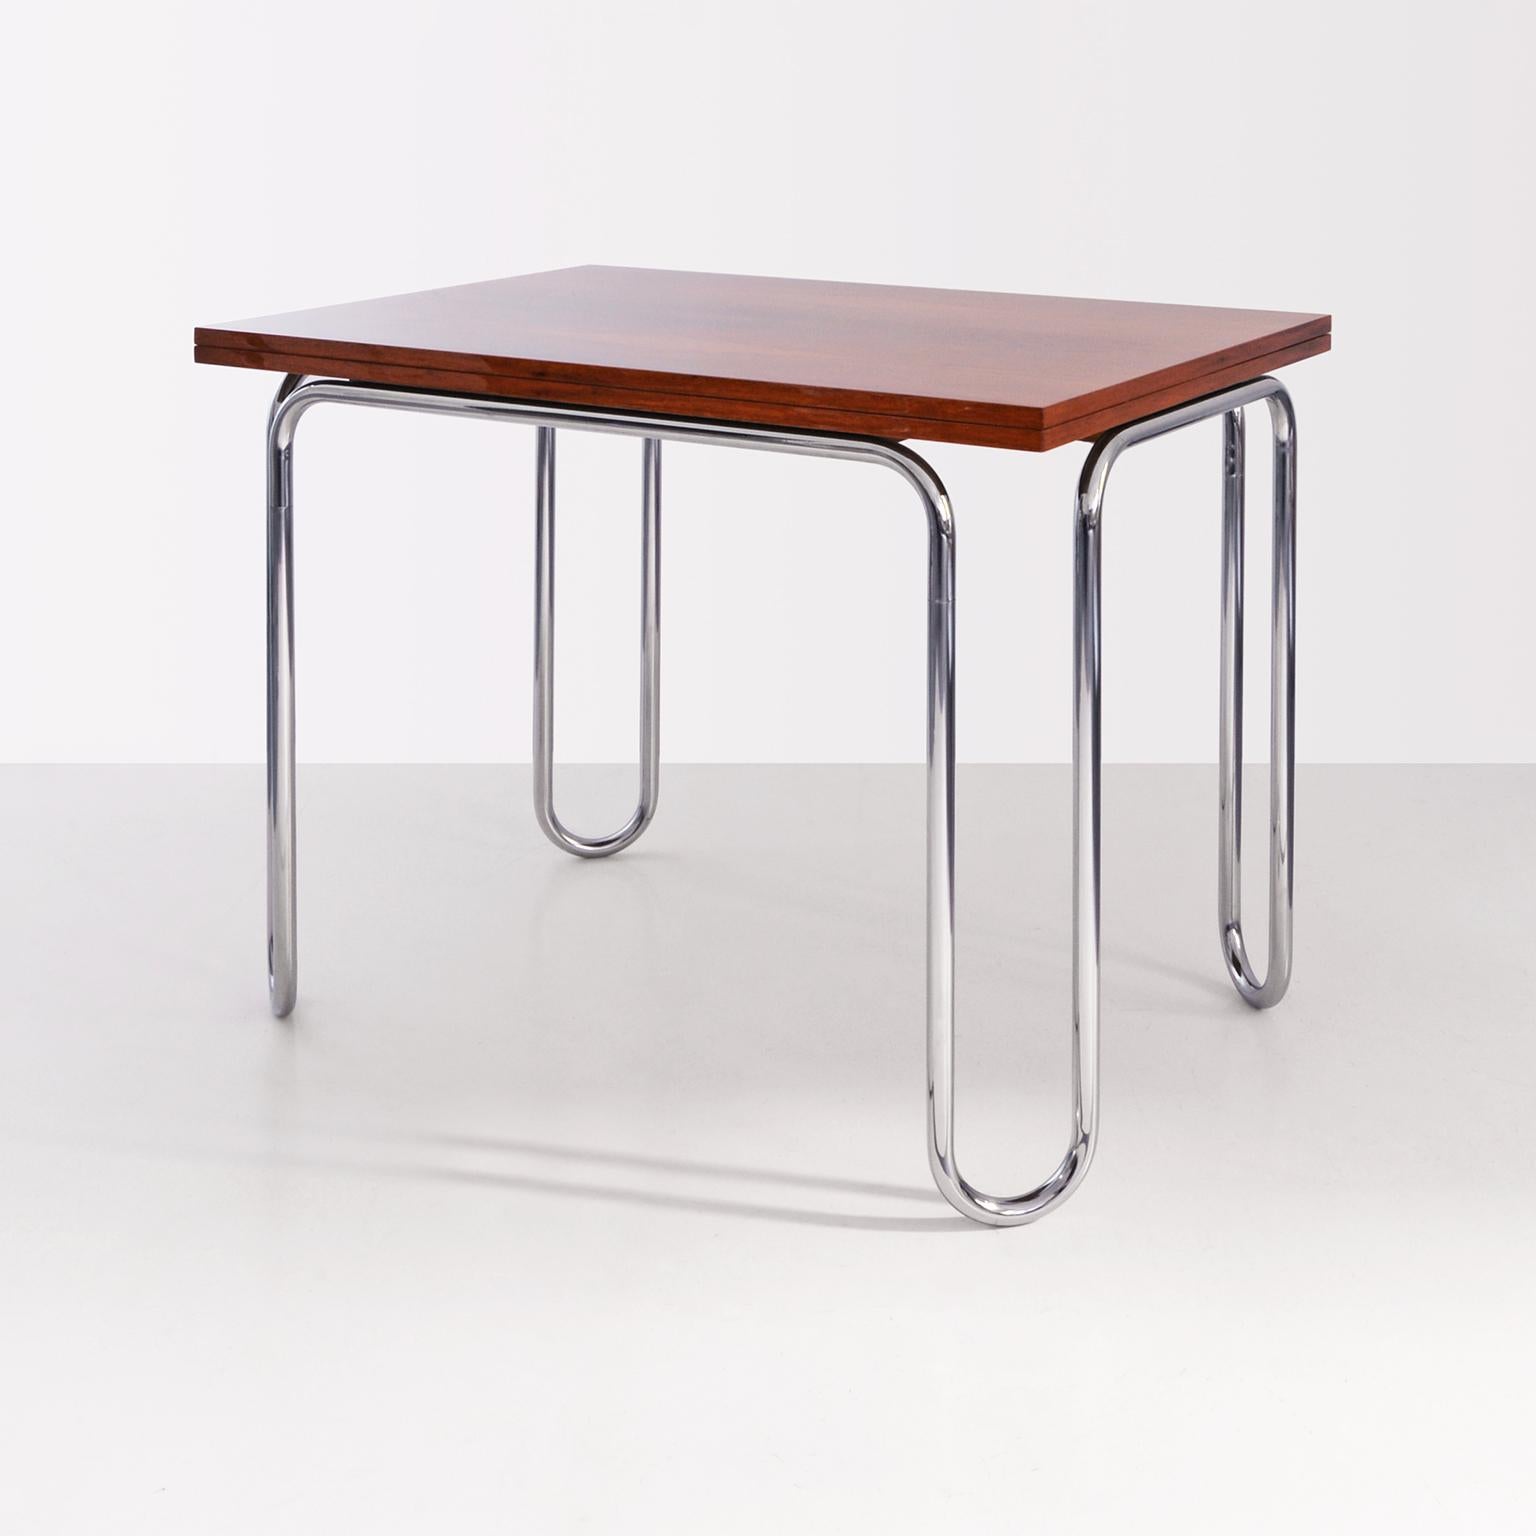 Table pliante moderniste en tube d'acier chromé et bois plaqué, personnalisable.